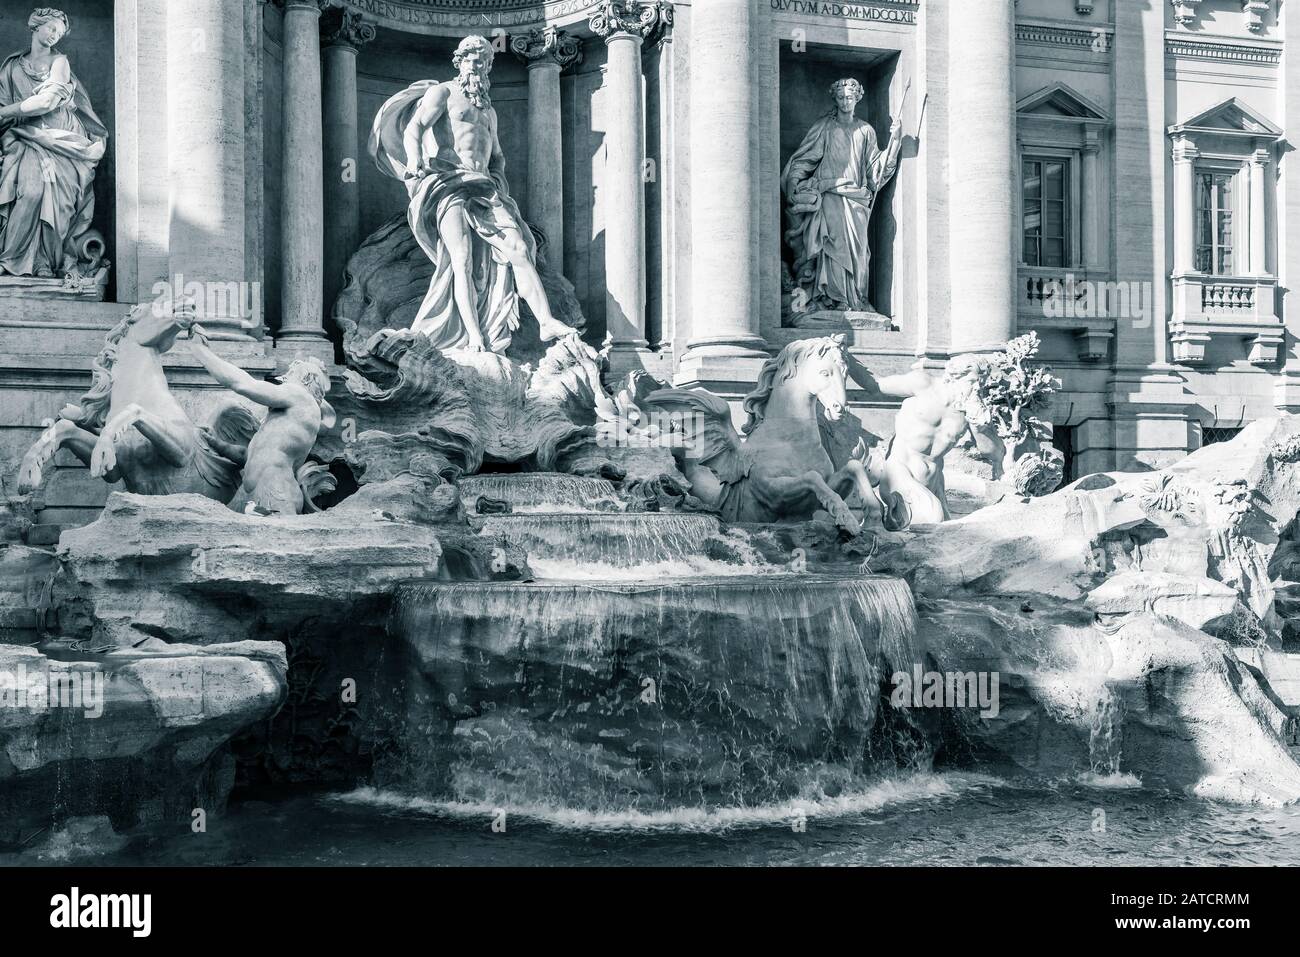 Fontaine de Trevi - historique la plus grande fontaine baroque à Rome, Italie Banque D'Images